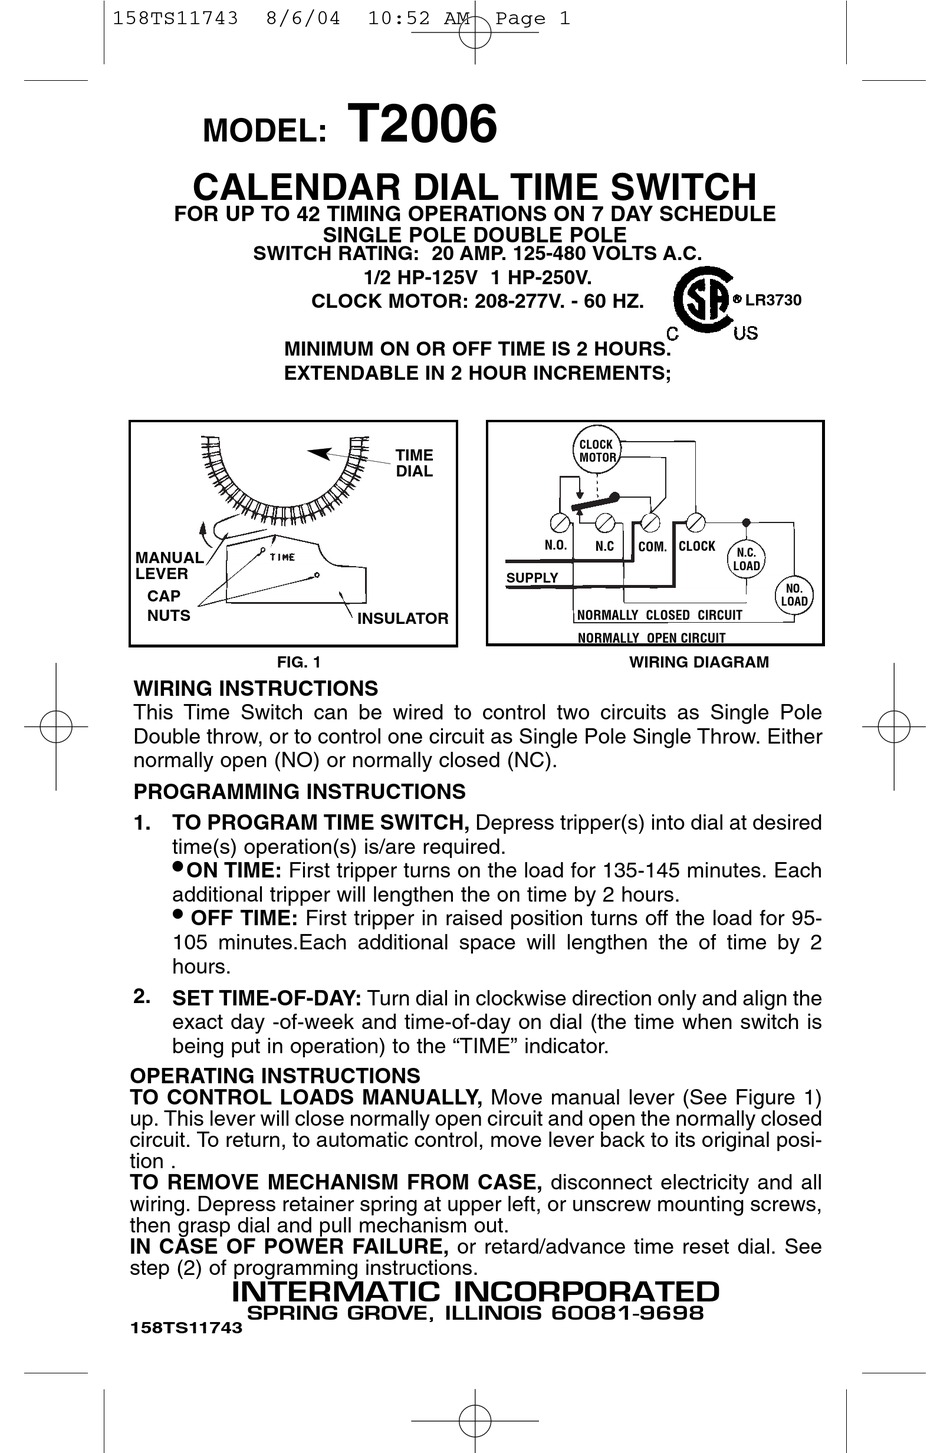 intermatic timer manual pdf